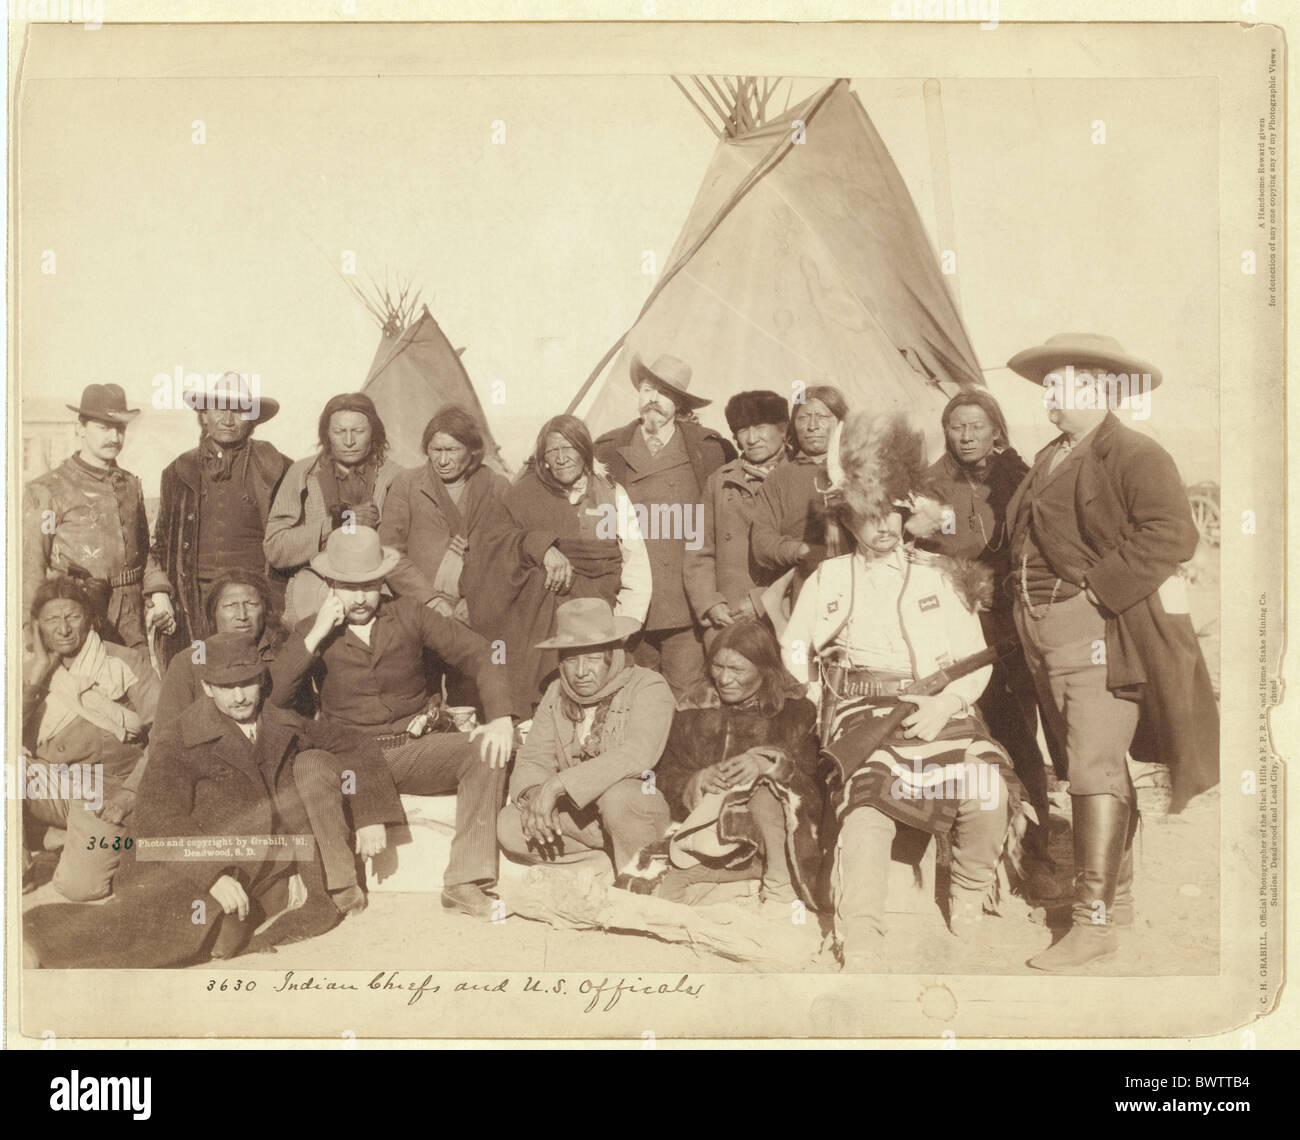 Los indios Campamento Indígena ejército John Grabill ca 1890 Pine Ridge, en Dakota del Sur John Grabill guerra ca. 1890 wild west ONU Foto de stock